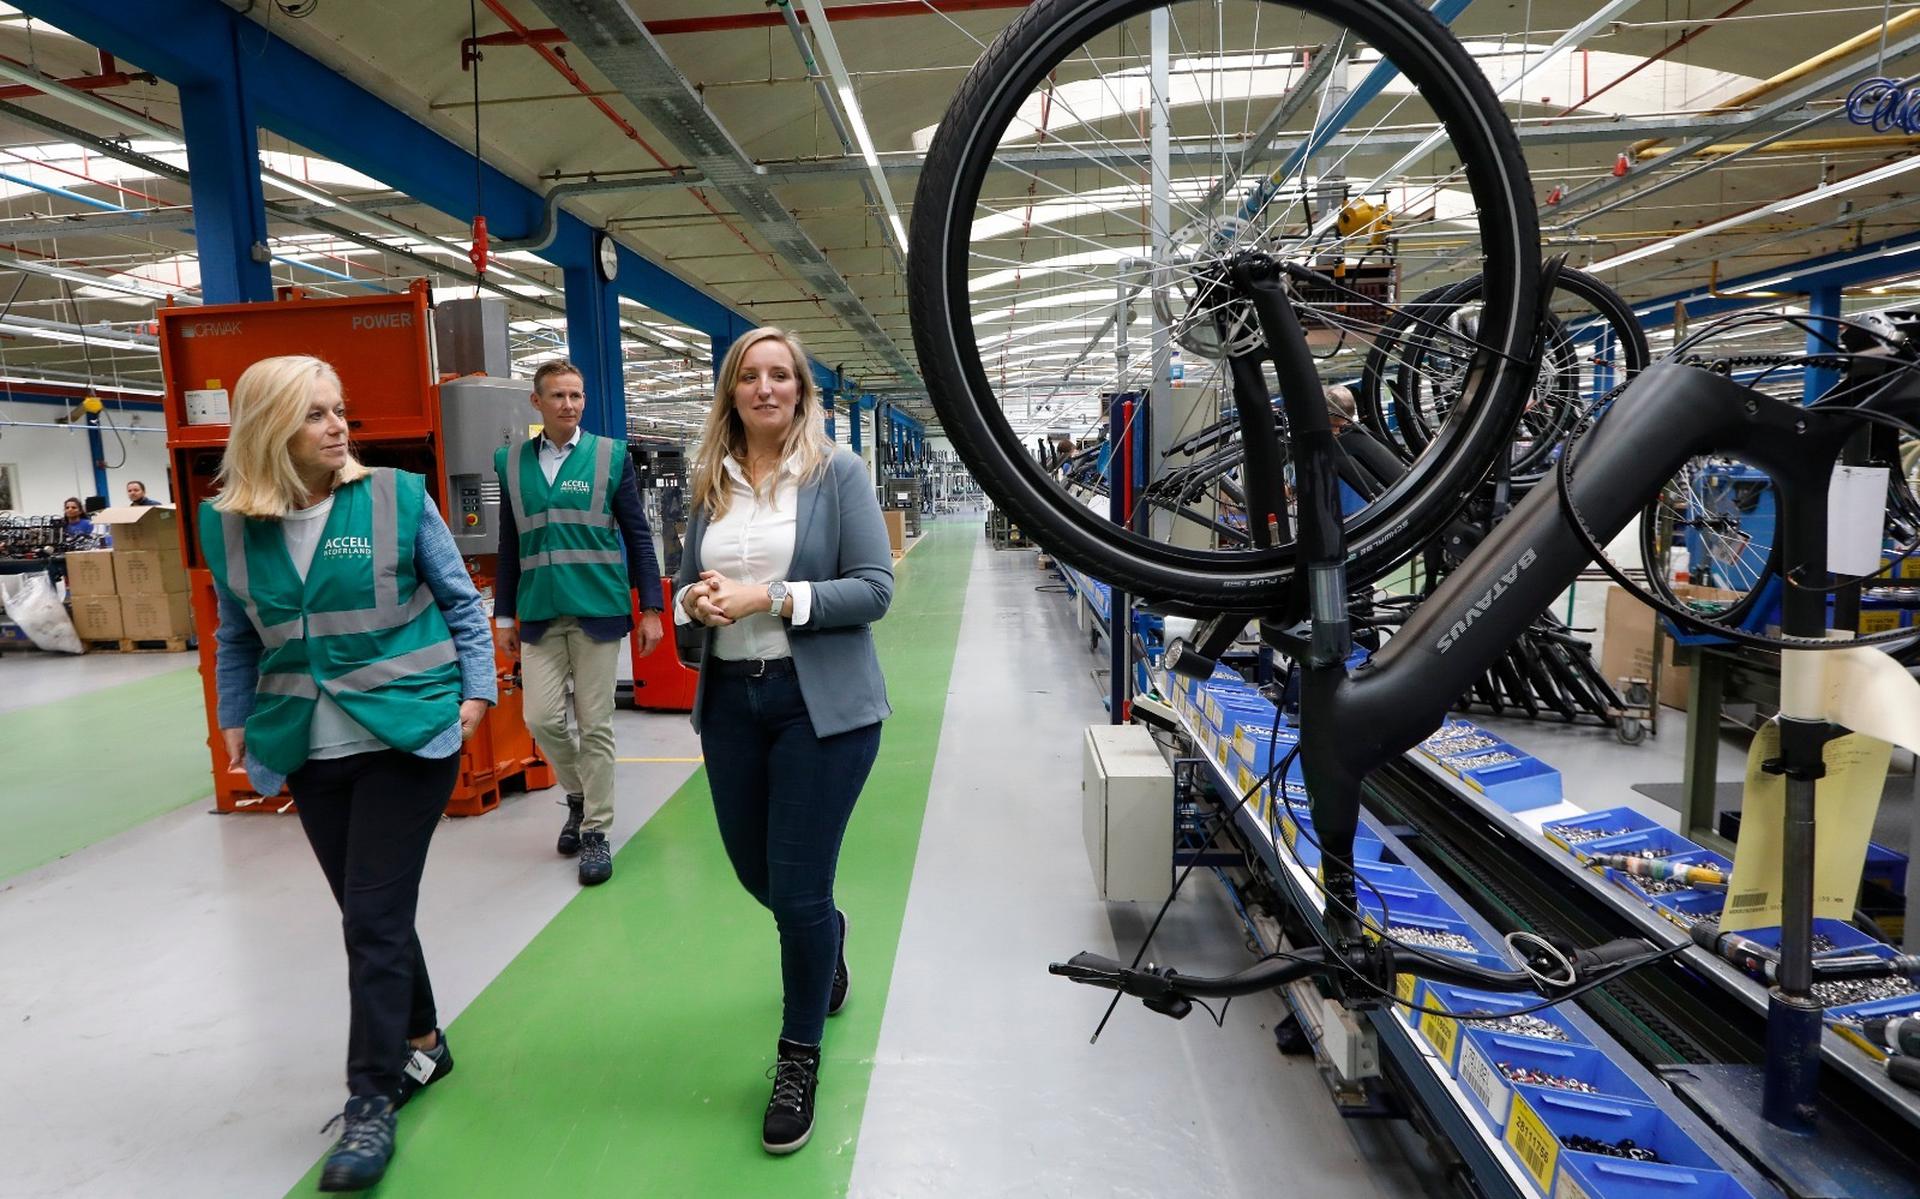 Eind augustus bracht D66-leider Sigrid Kaag als minister van Buitenlandse Handel en Ontwikkelingssamenwerking een bliksembezoek aan de Batavus fietsenfabriek van Accell in Heerenveen. Op de foto krijgt Kaag (links) een rondleiding door de fabriek van Sten van der Hem en Annemarie Jorna van Accell. 